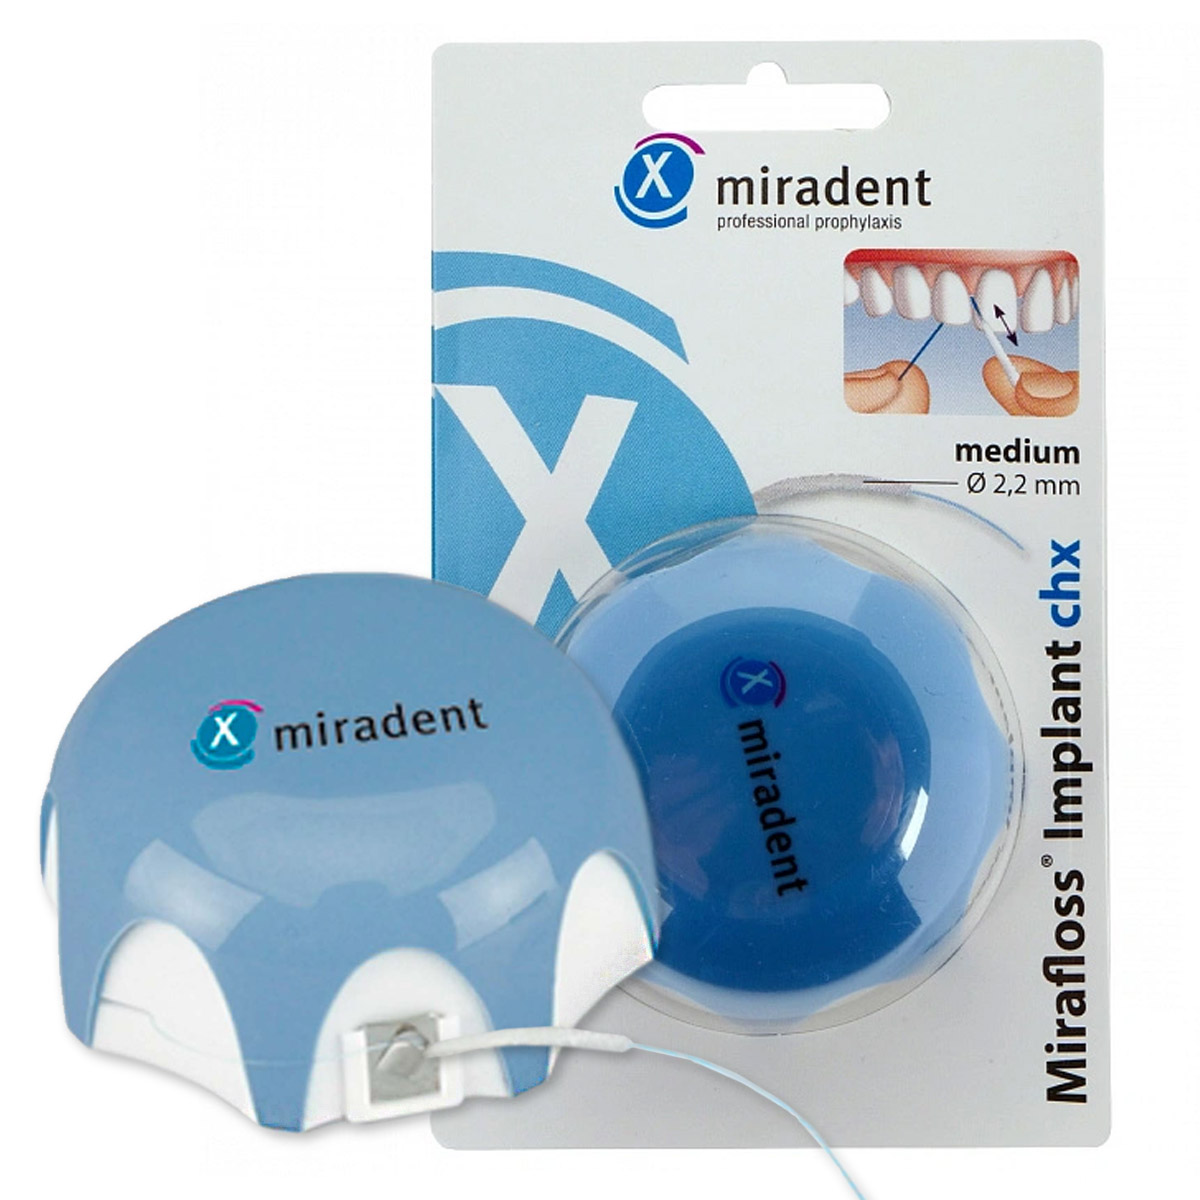 Зубная нить miradent Implant chx 2,2 мм для имплантов/брекетов